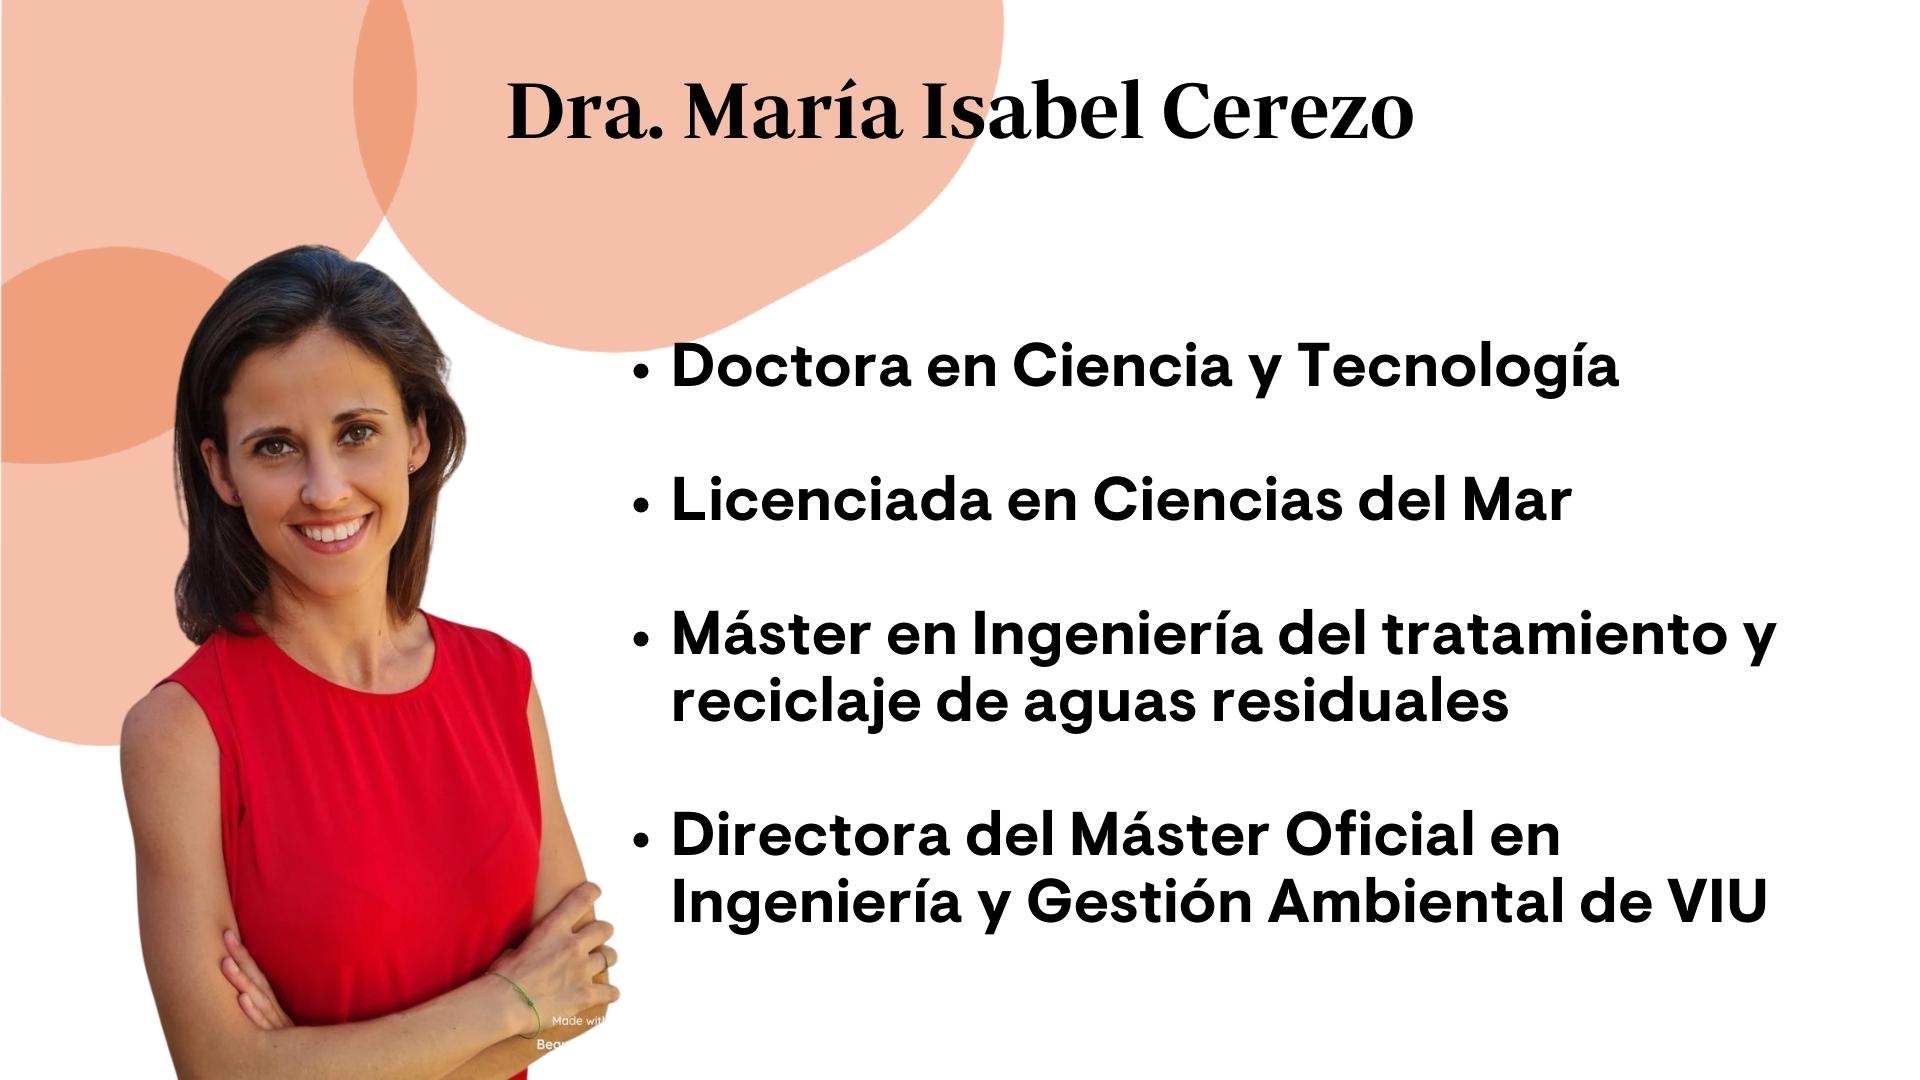 Dra. María Isabel Cerezo VIU ficha